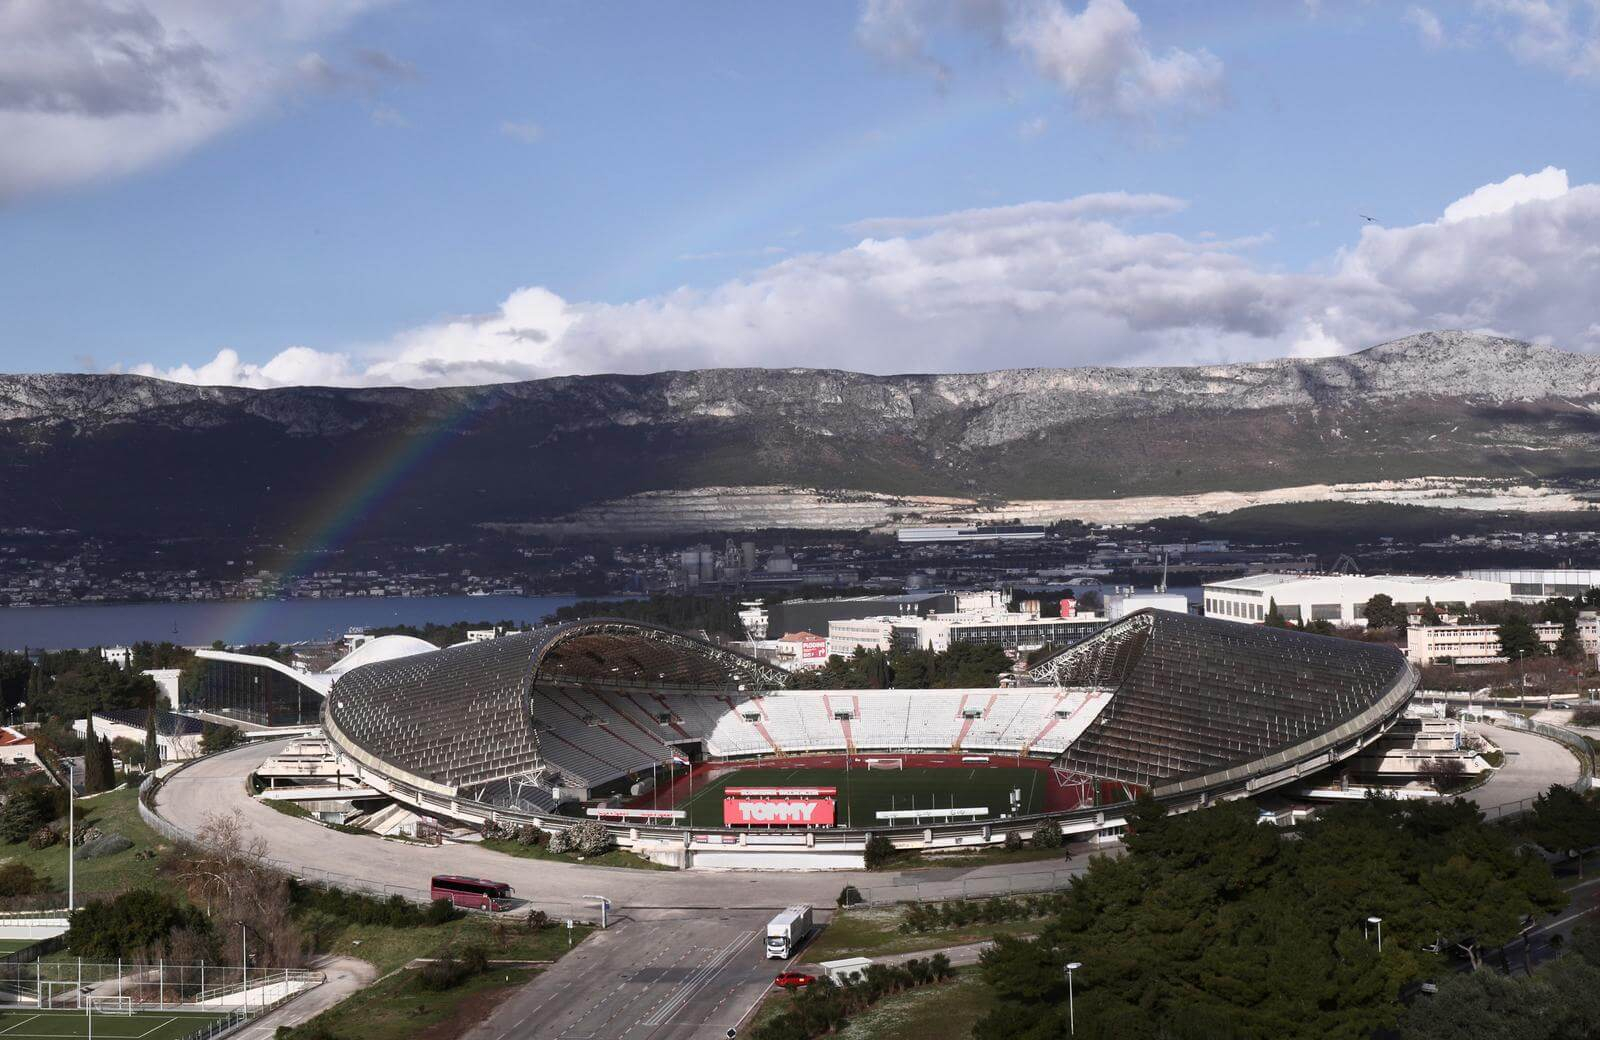 Almost HRK 150 million Needed for Poljud Stadium Renovation - Total Croatia